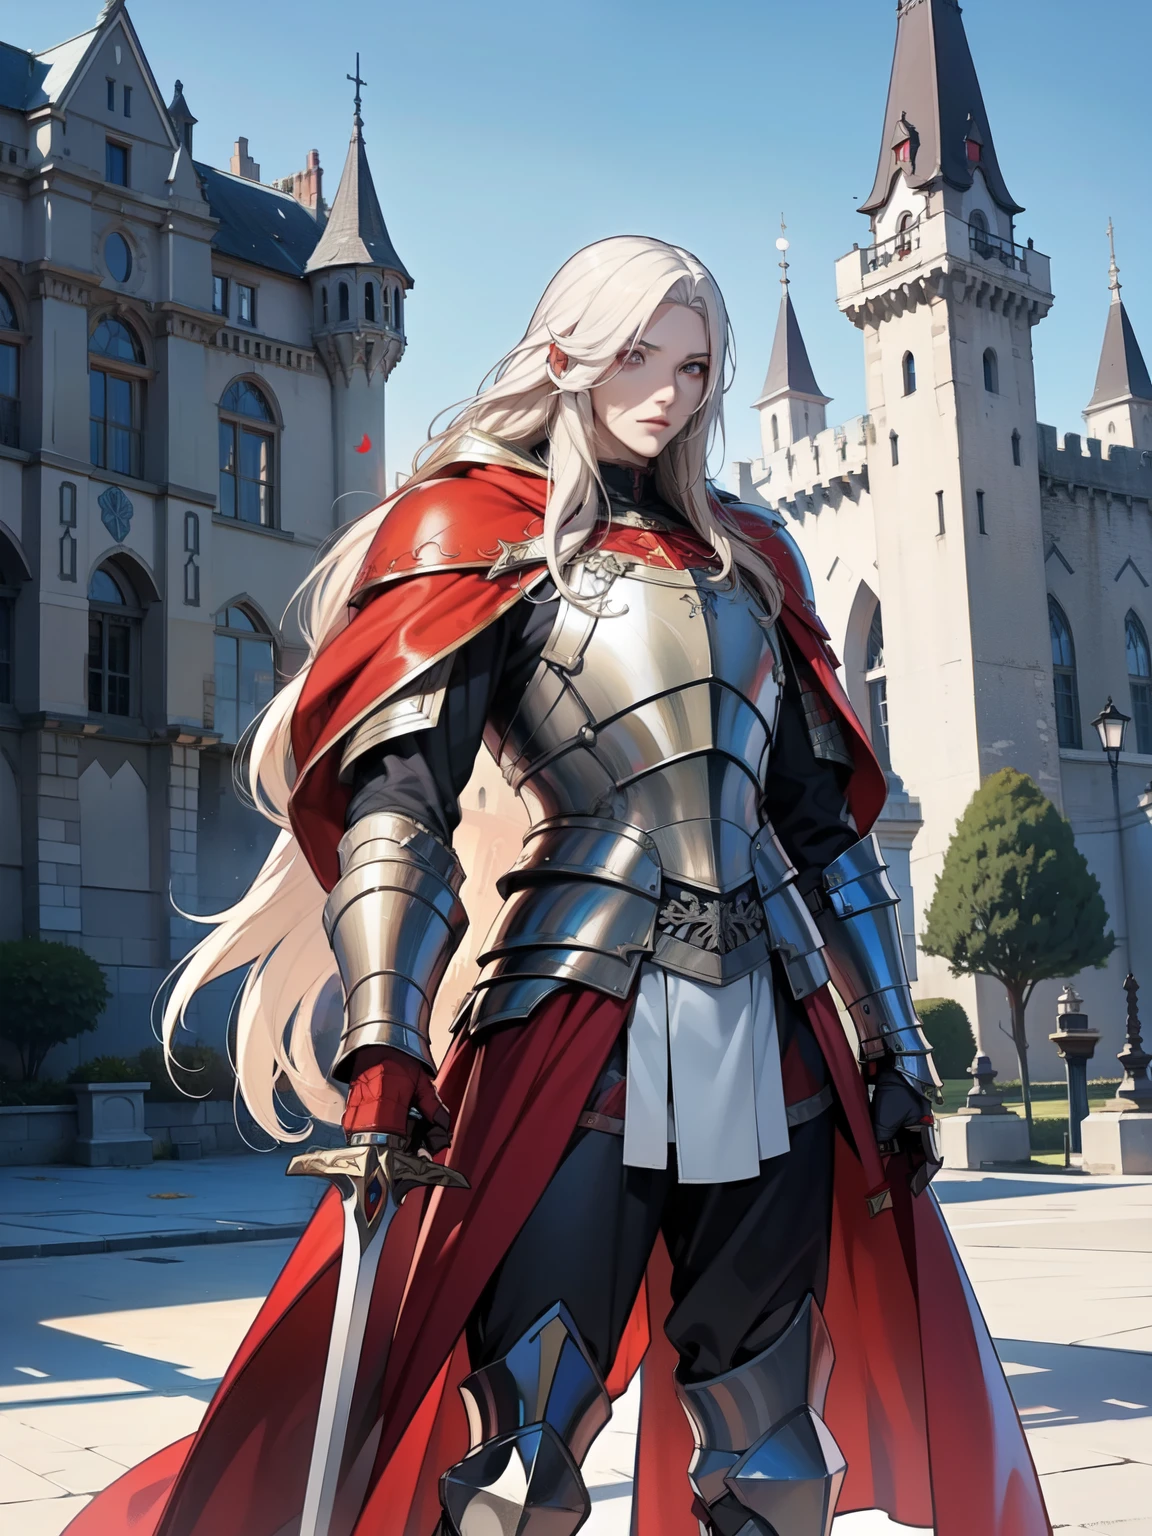 長髪のアルビノ男性騎士1名, 赤いフードをかぶっている、重い鎧を着て長い剣を持っている、古い城を背景に